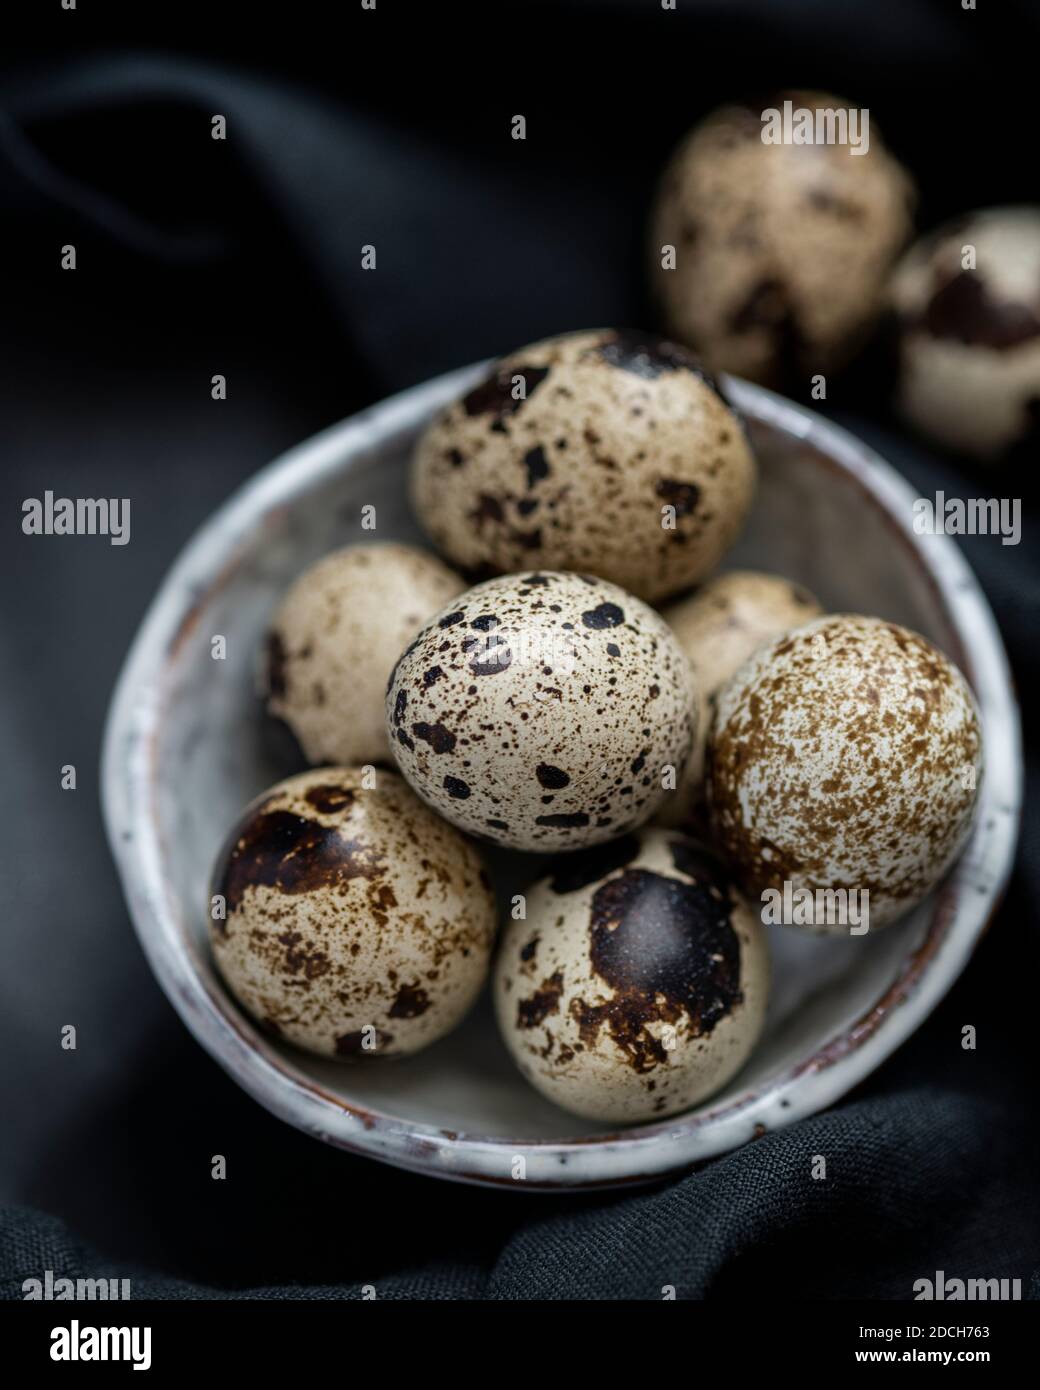 Uova di quaglia in ciotola bianca su sfondo nero, uova di quaglia, mucchio di uova di quaglie in ciotola, uova macchiate, uova macchiate in ciotola, uova di quaglia su sfondo scuro Foto Stock